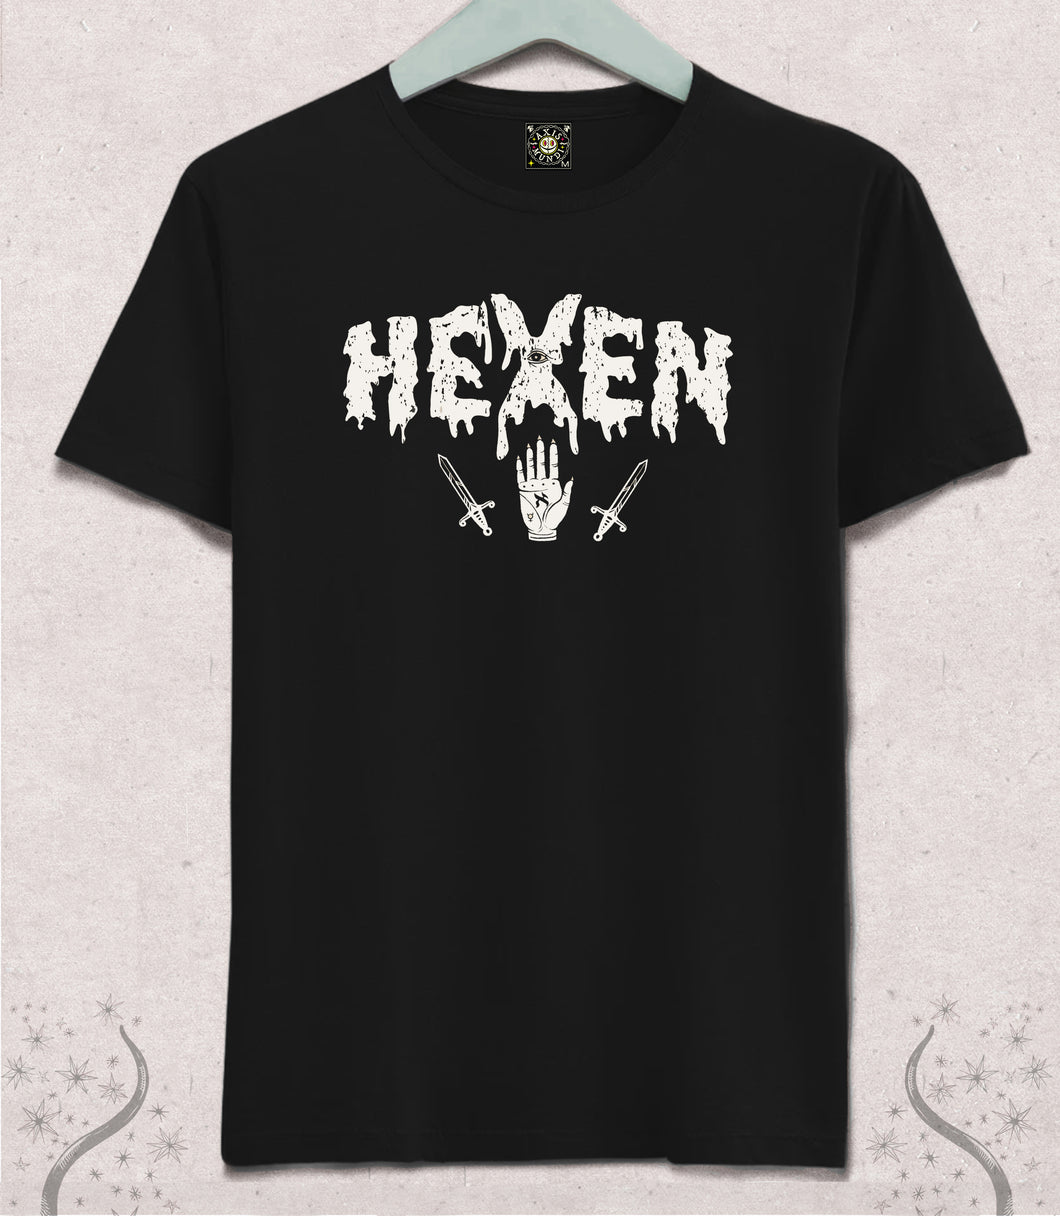 Hexen Tee Black